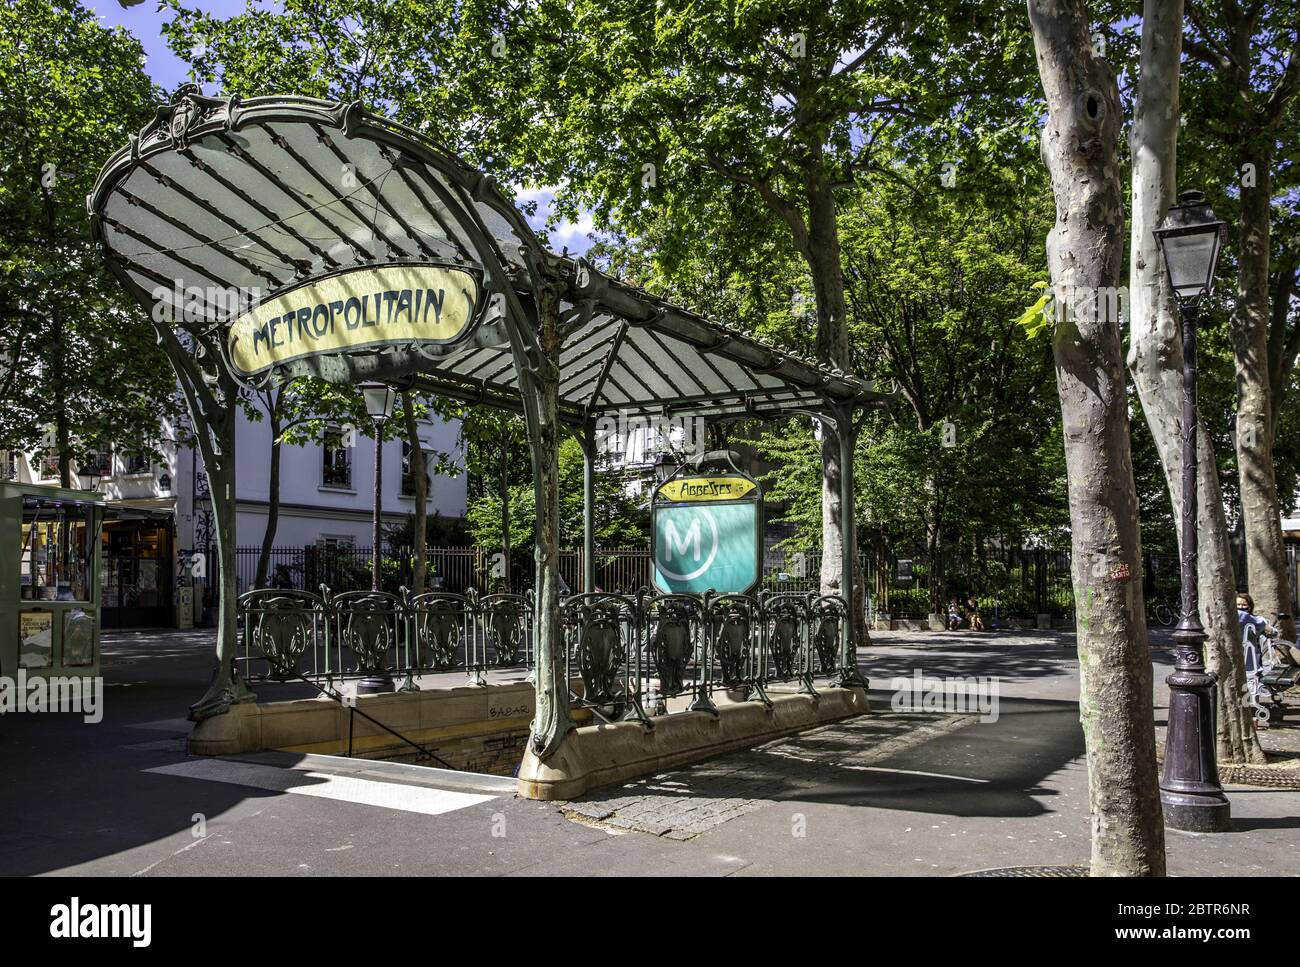 Paris, France - May 20, 2020: Abbesses metropolitain station in Montmartre, famous Art Nouveau symbol Stock Photo